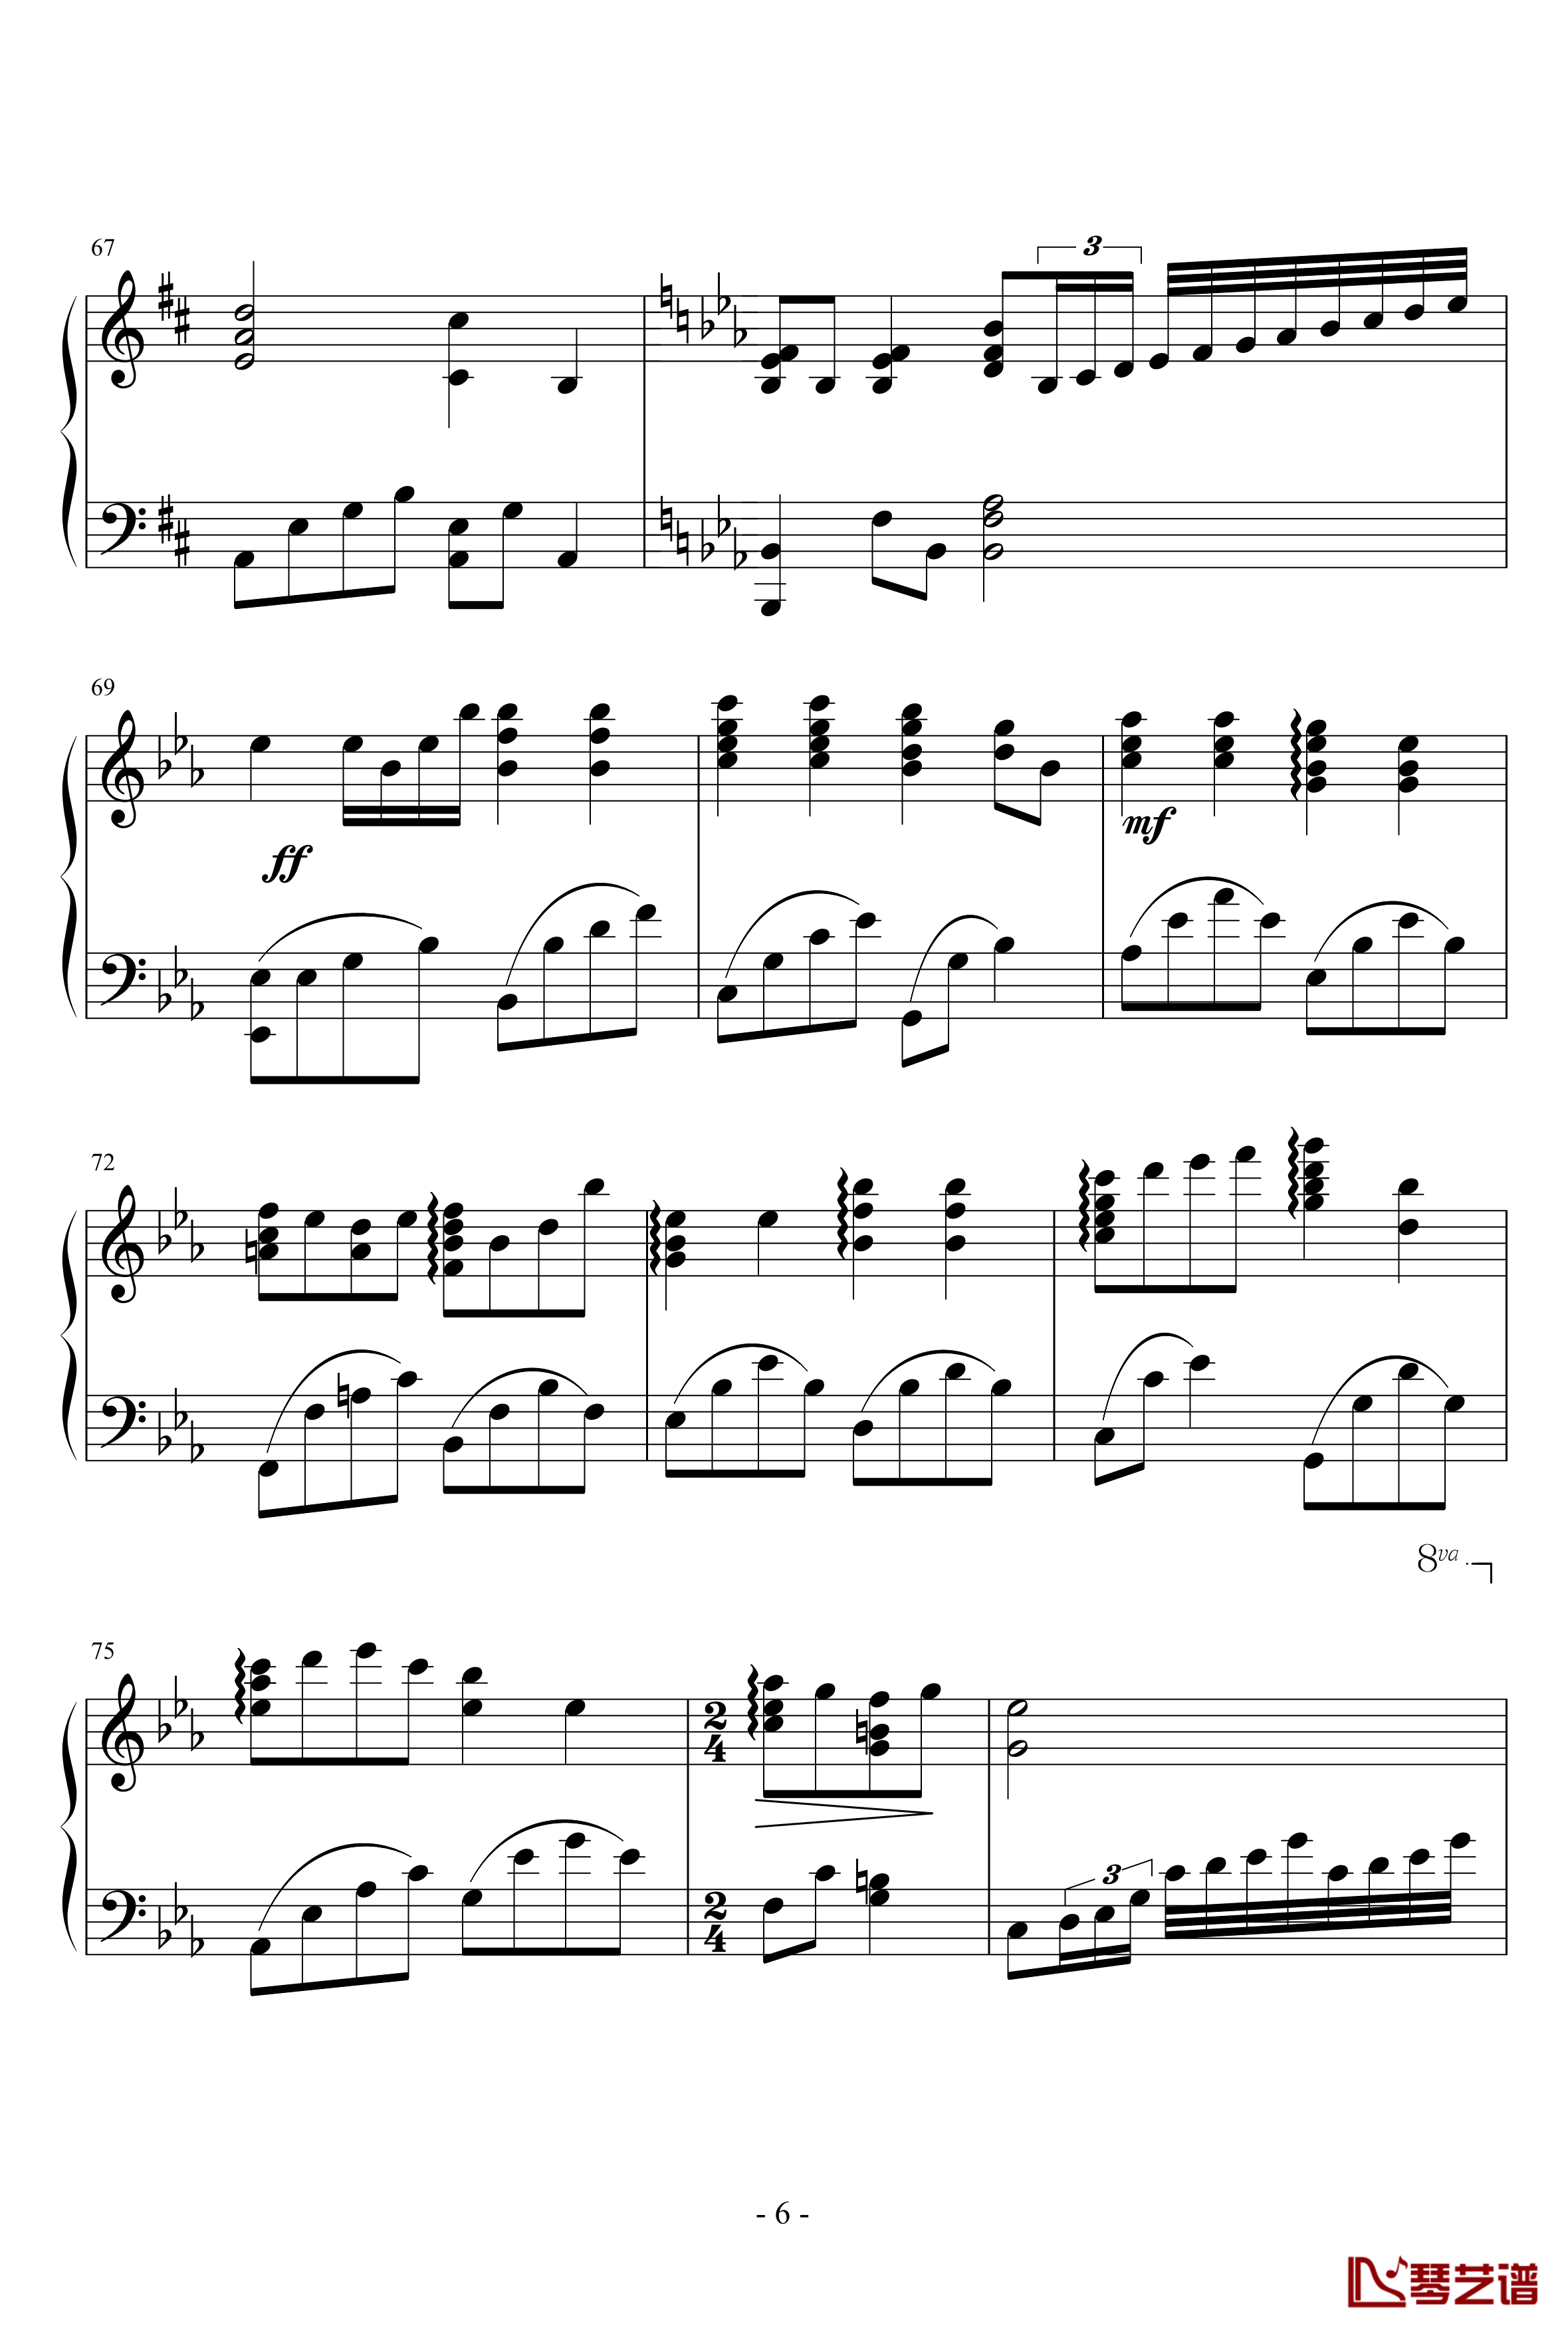 小星星幻想曲钢琴谱-完美版-V.K克6